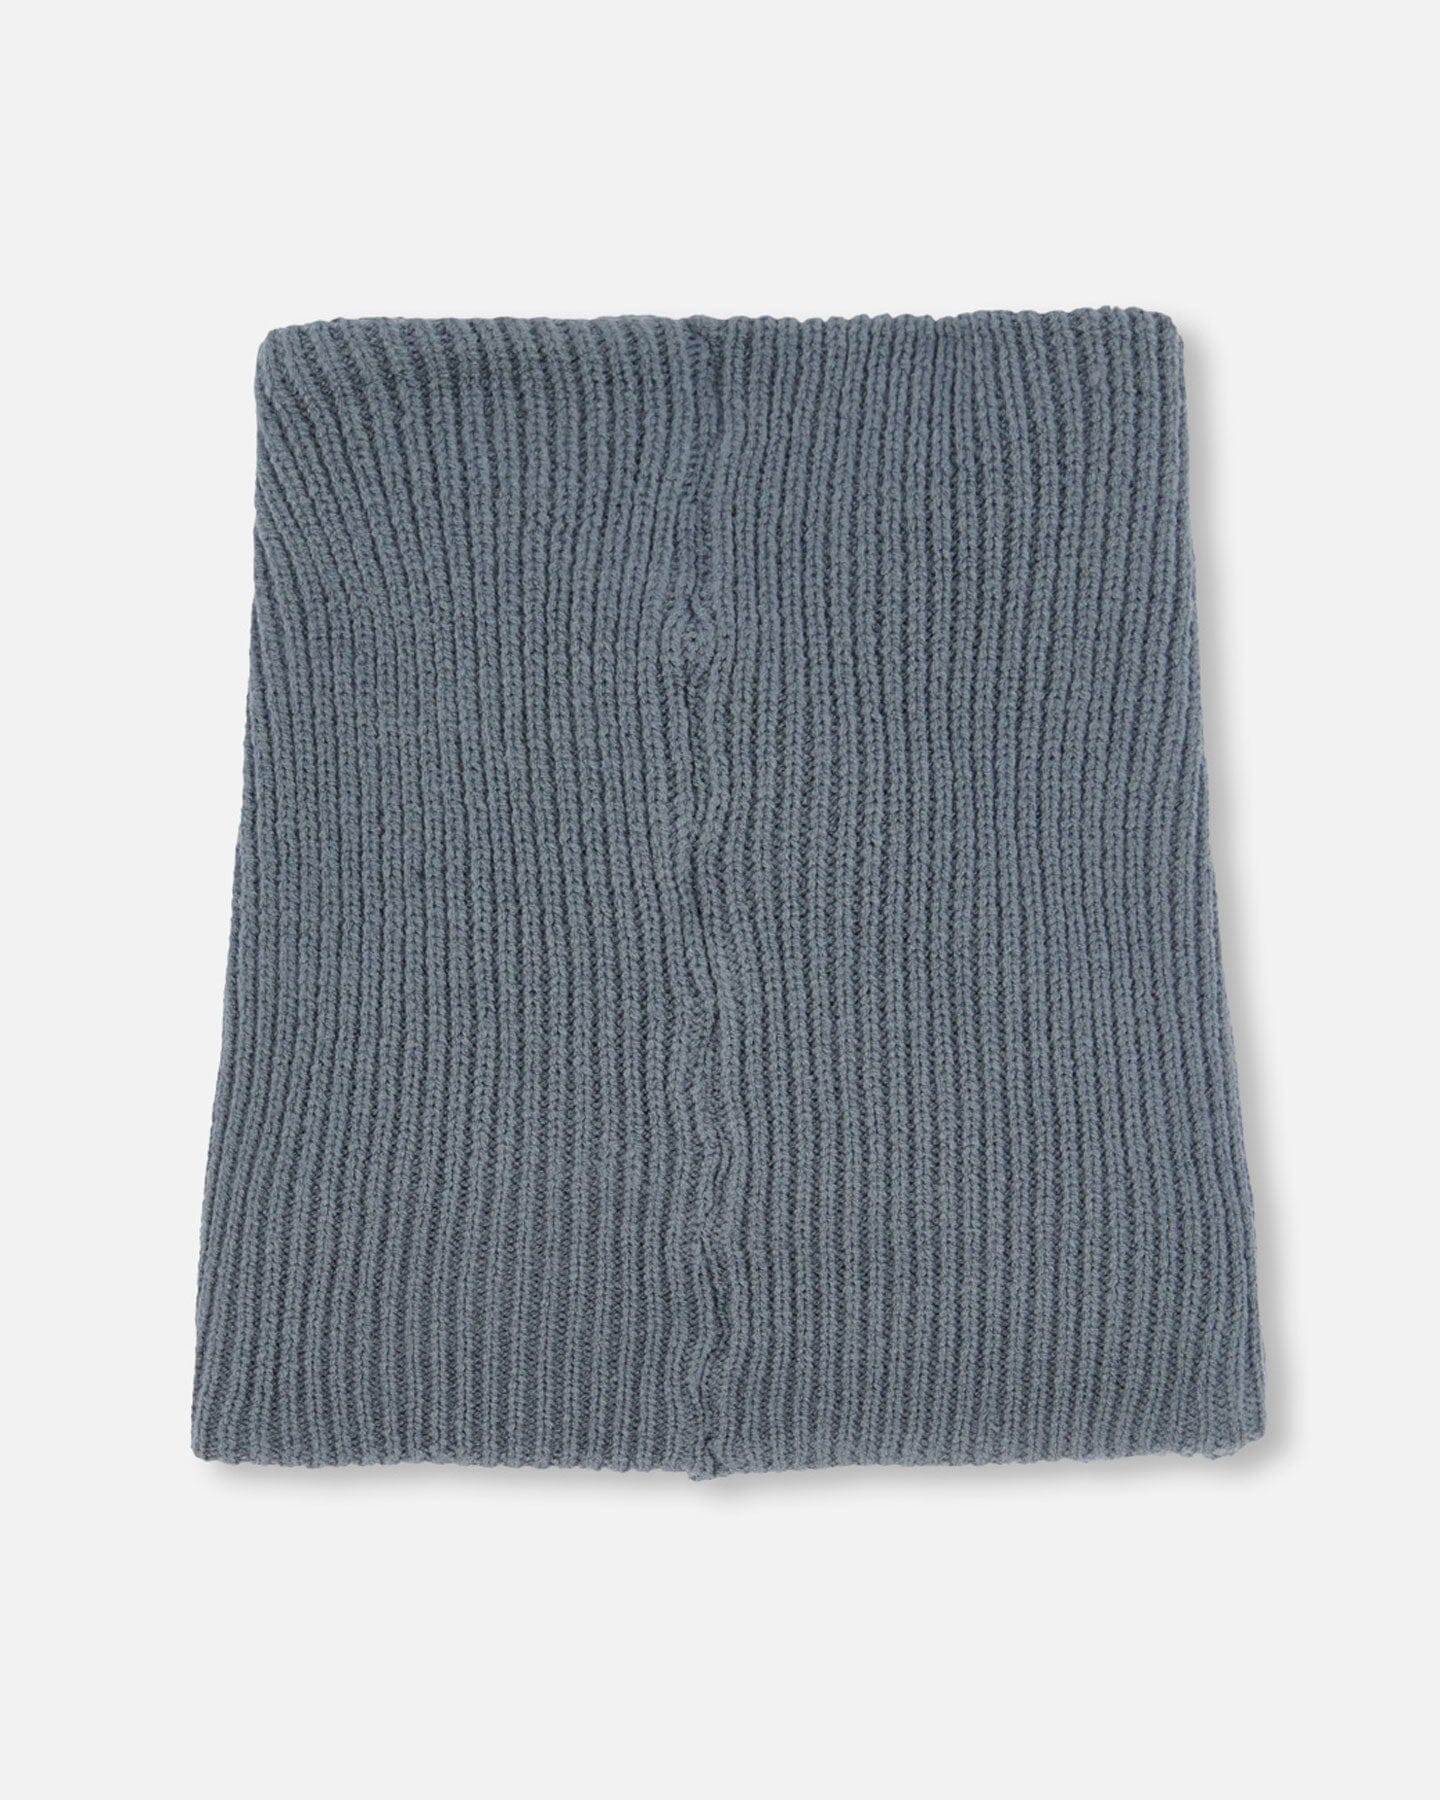 Cache-cou en tricot extensible, 2-6 ans, Noir. Colour: black, Fr